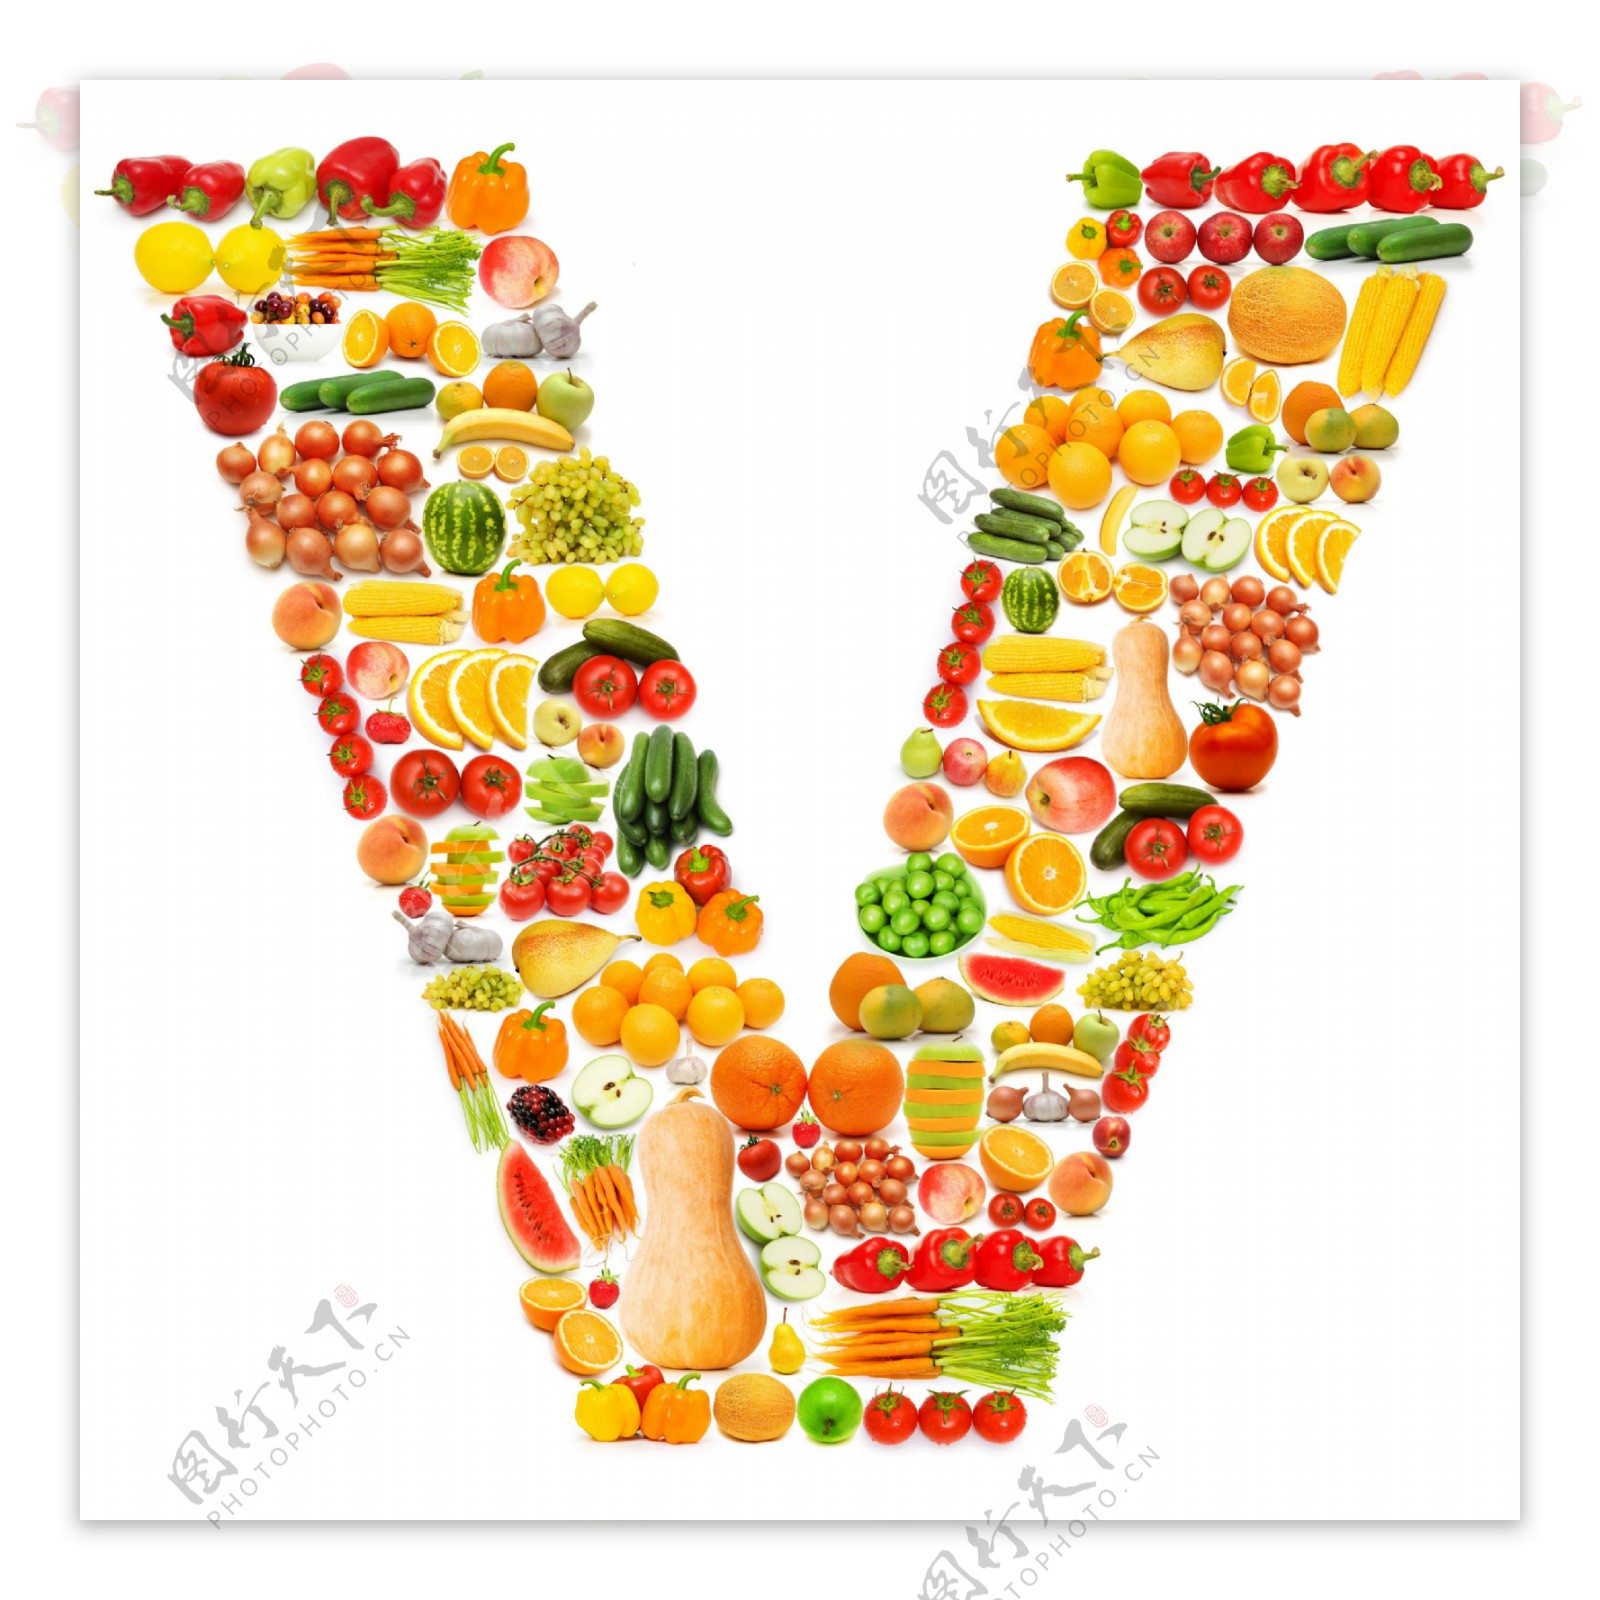 蔬菜水果组成的字母V图片